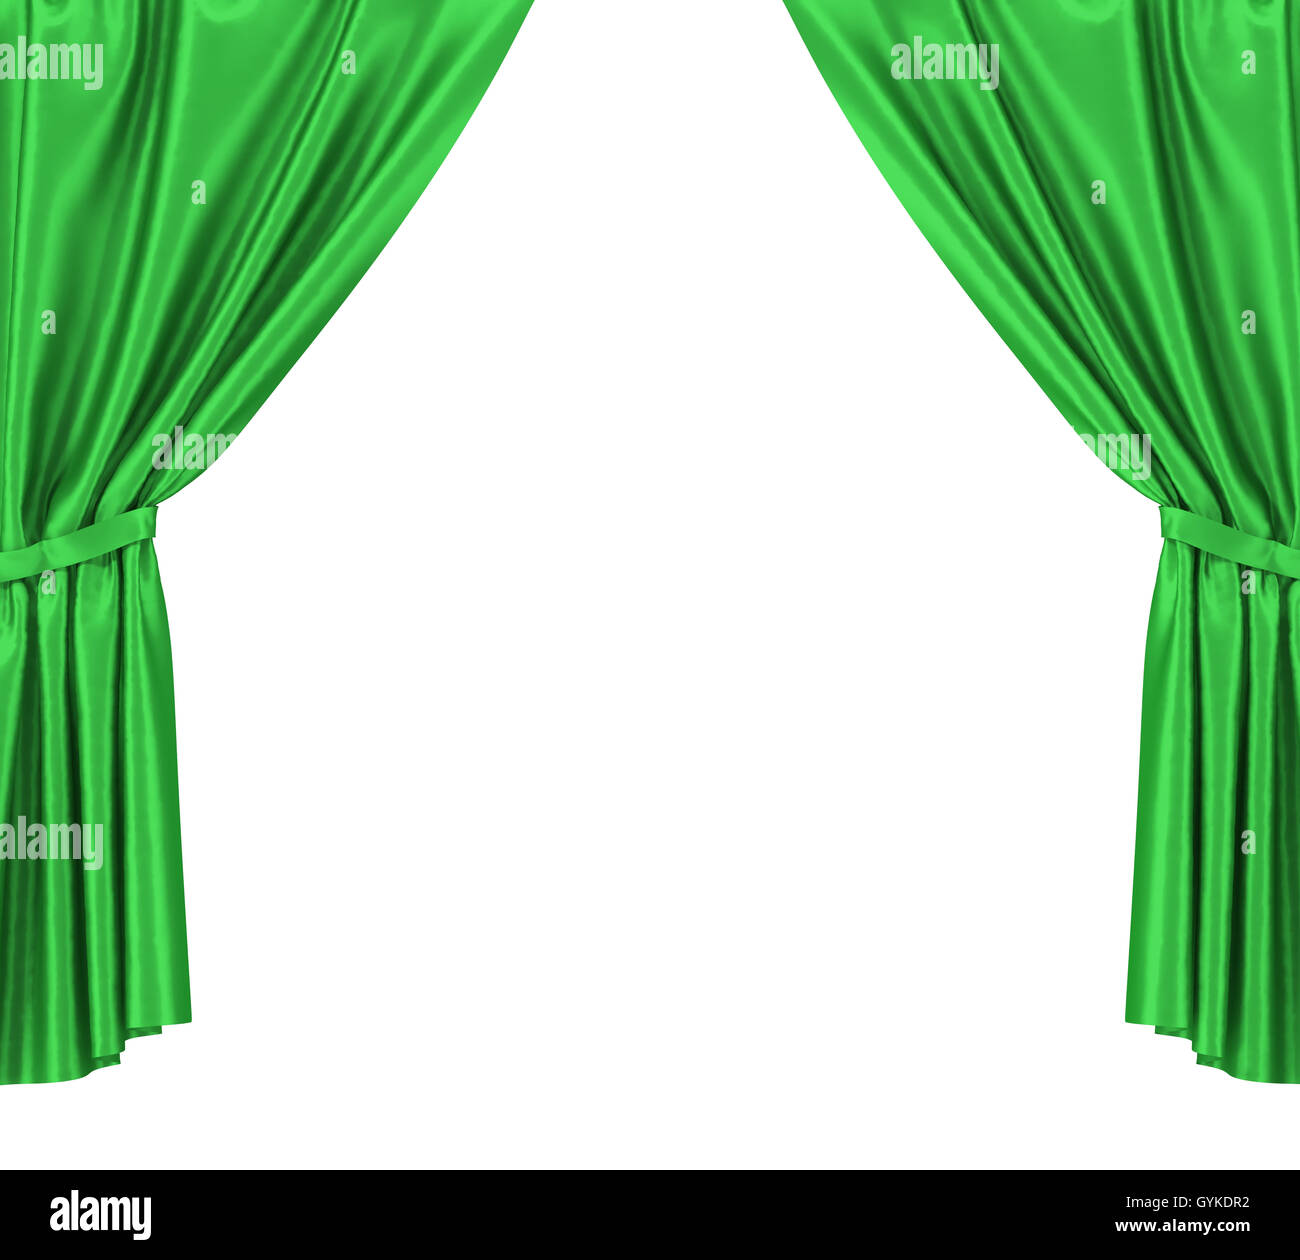 La cortina verde oscuro cerrada en: vector de stock (libre de regalías)  2273815433